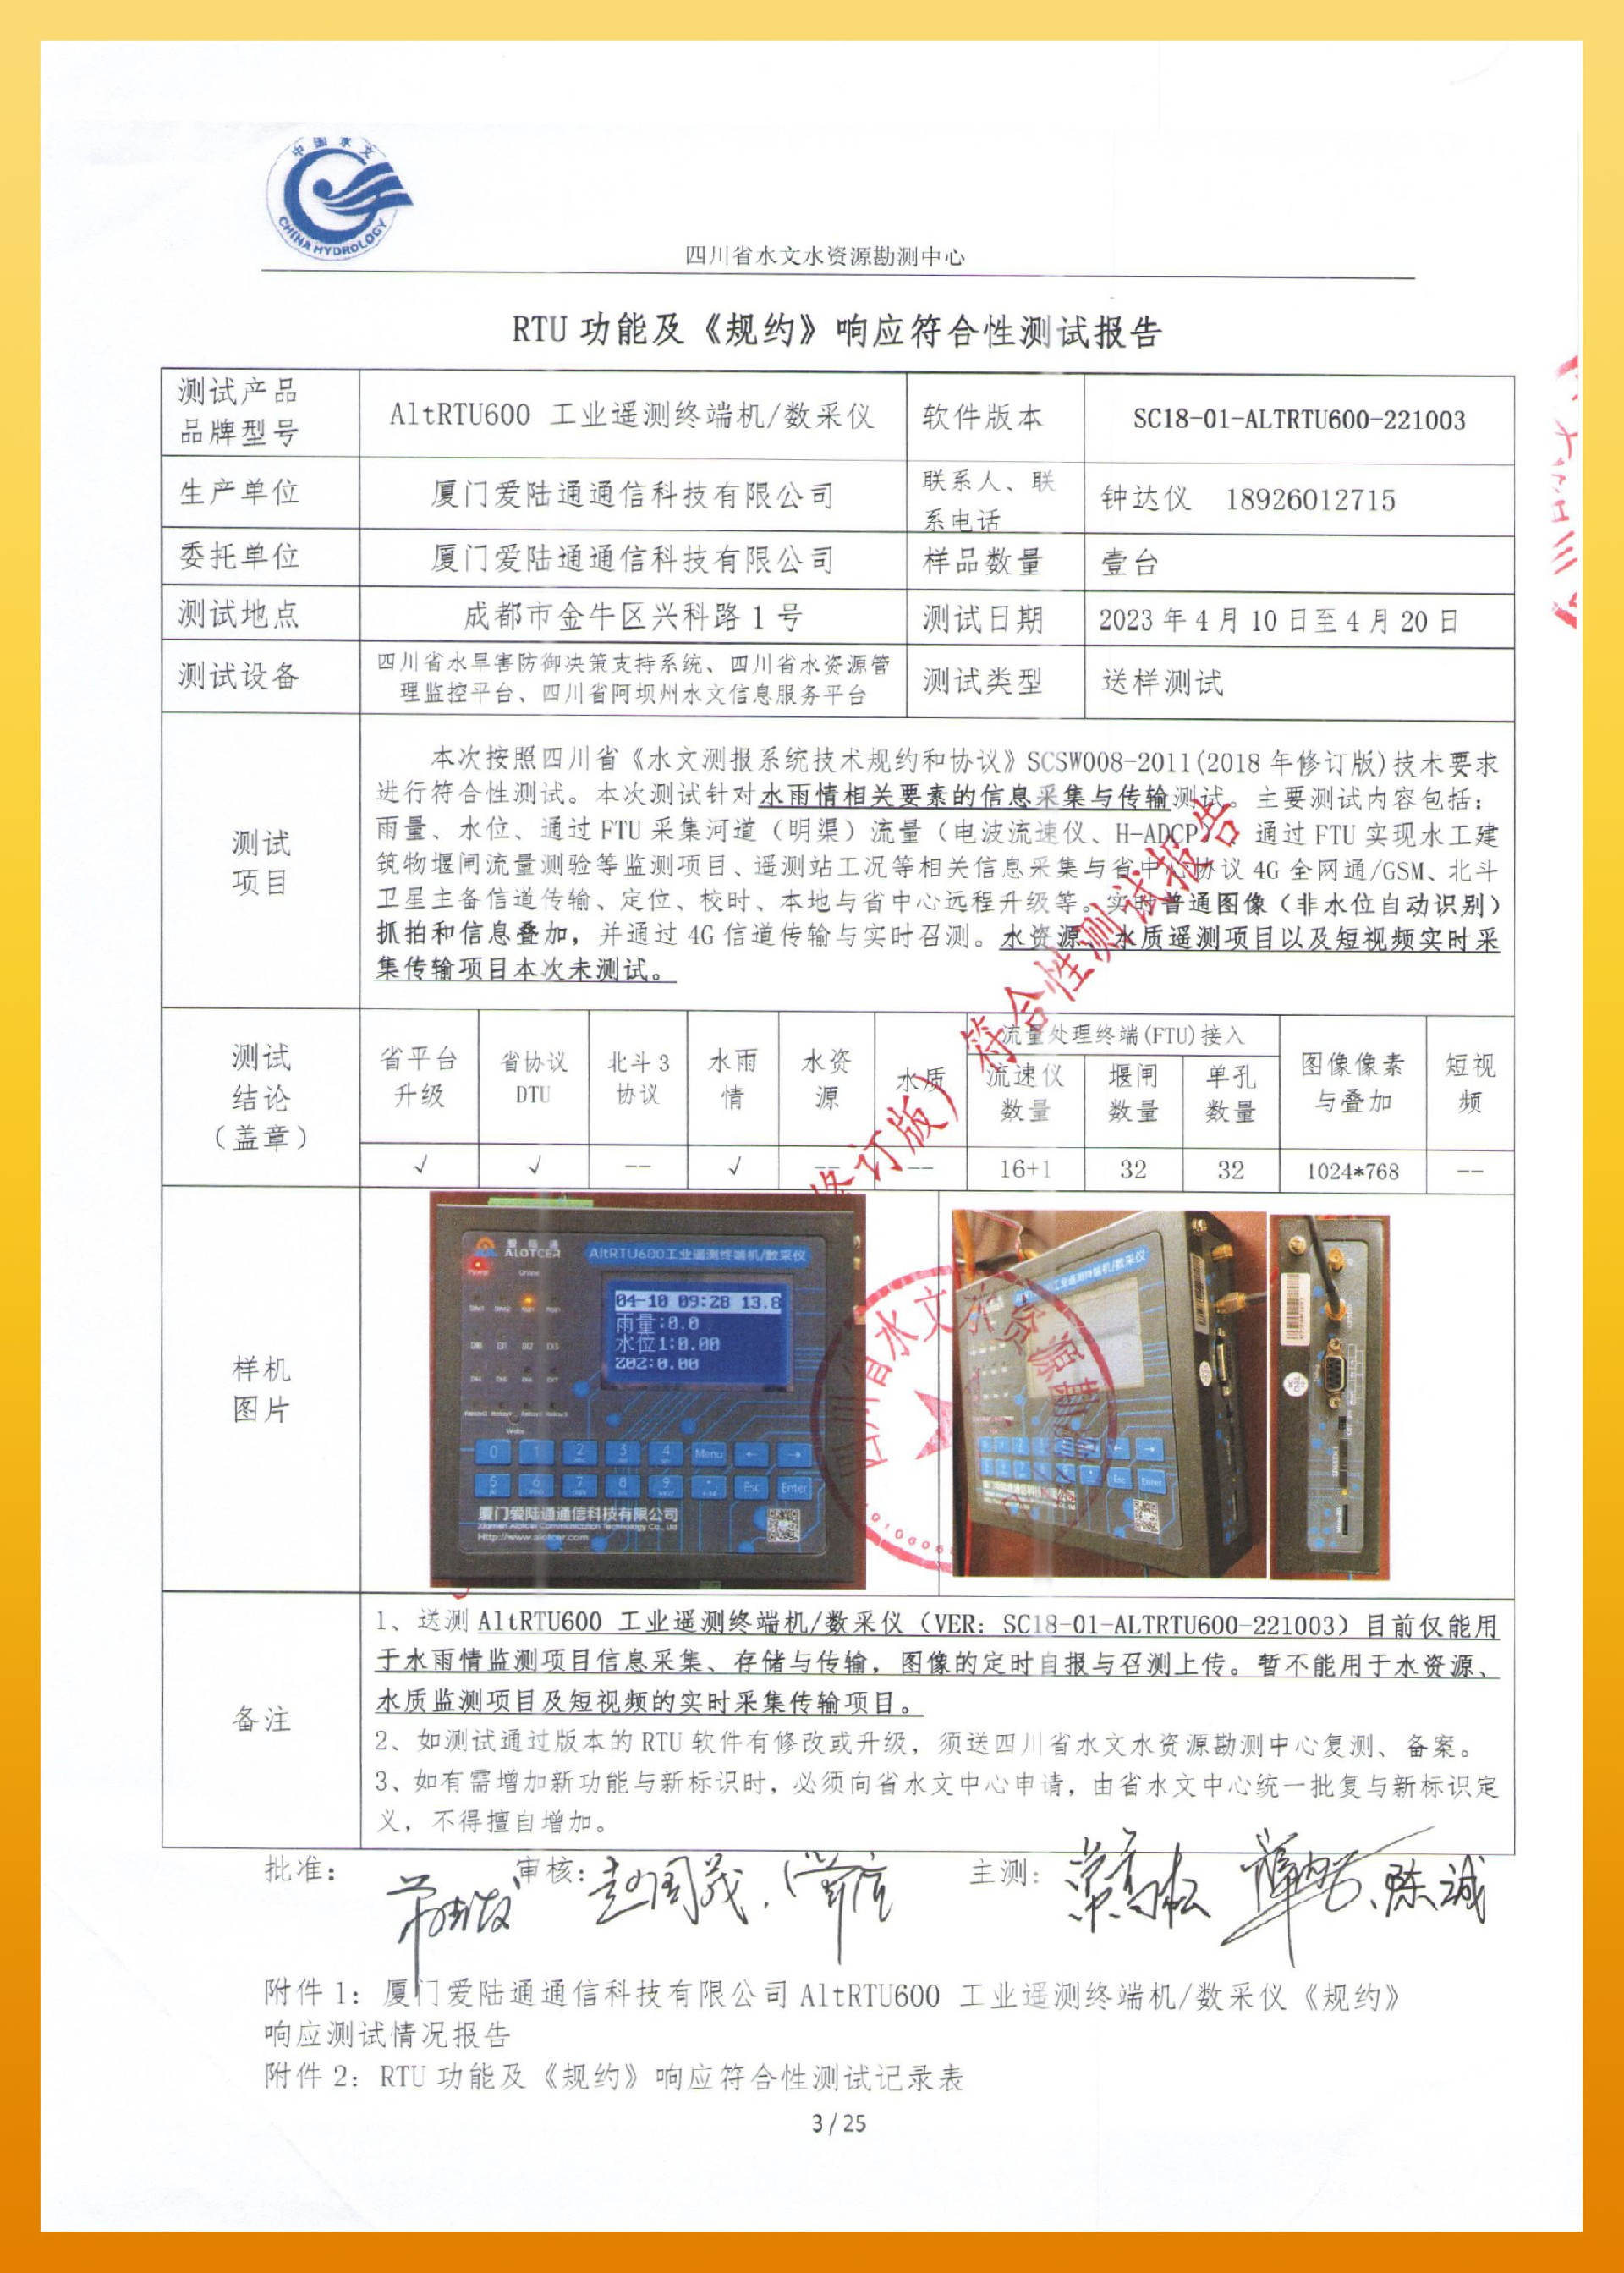 爱陆通-四川水文测报系统技术规约和协议 SCSW008-2011-3.jpg